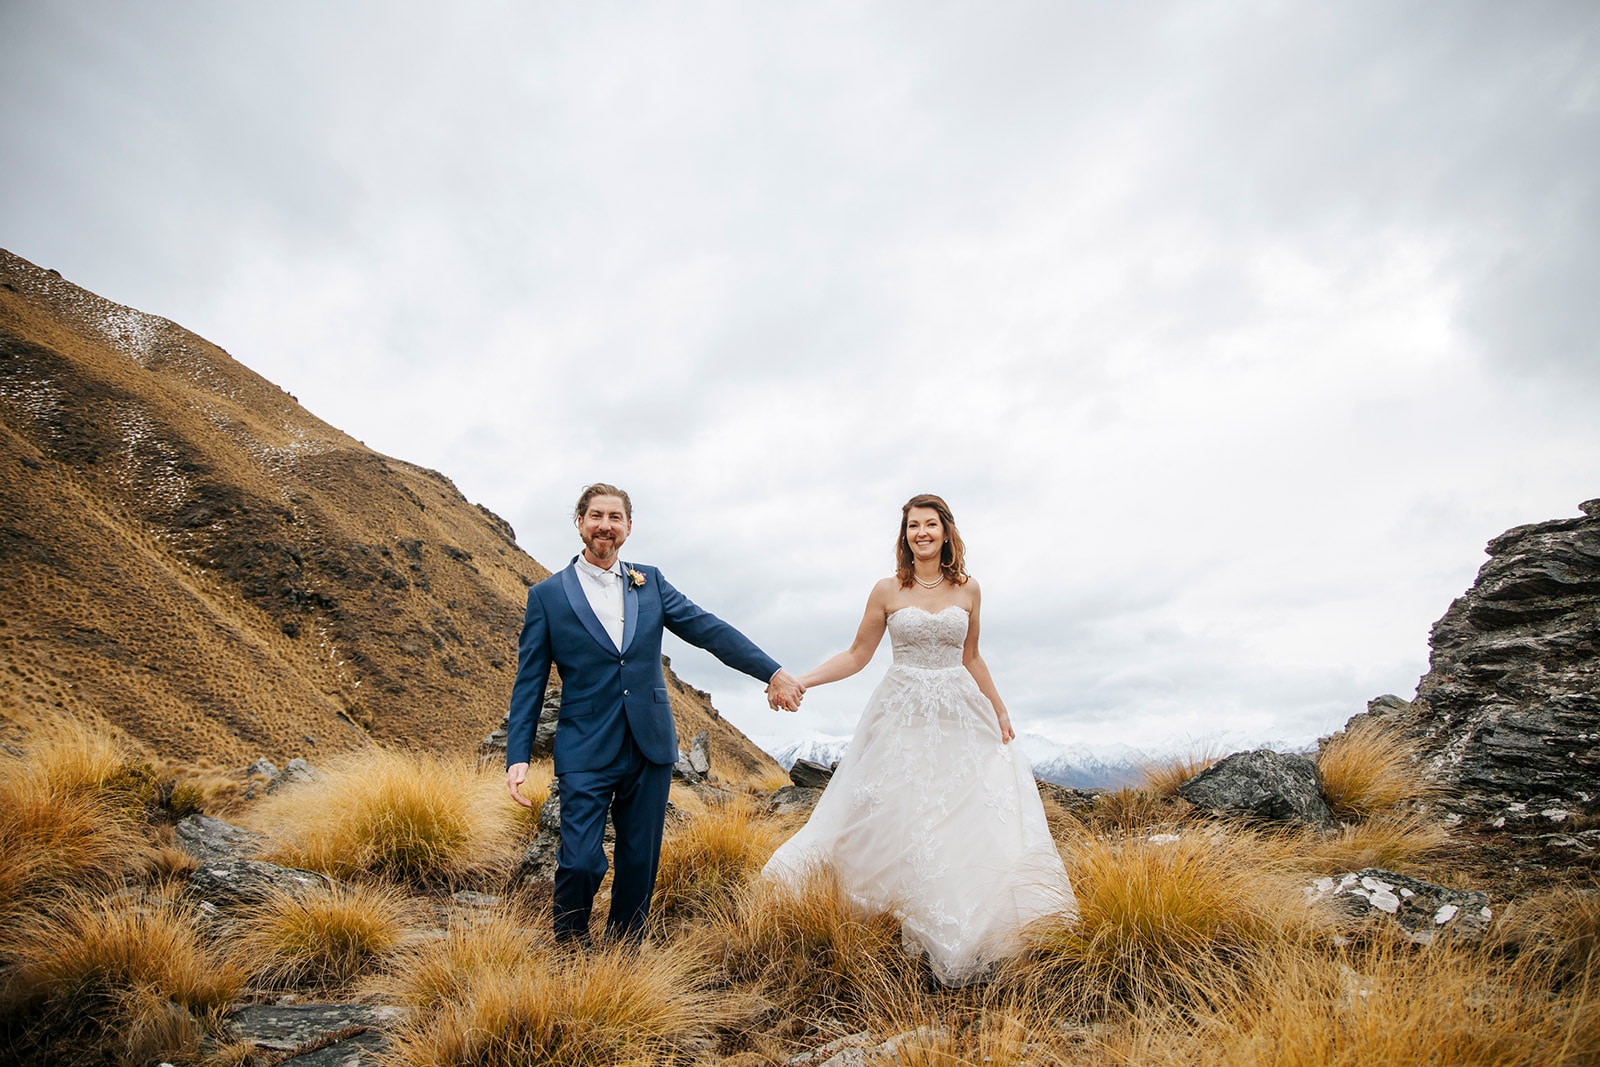 New Zealand Winter Wedding in Queenstown